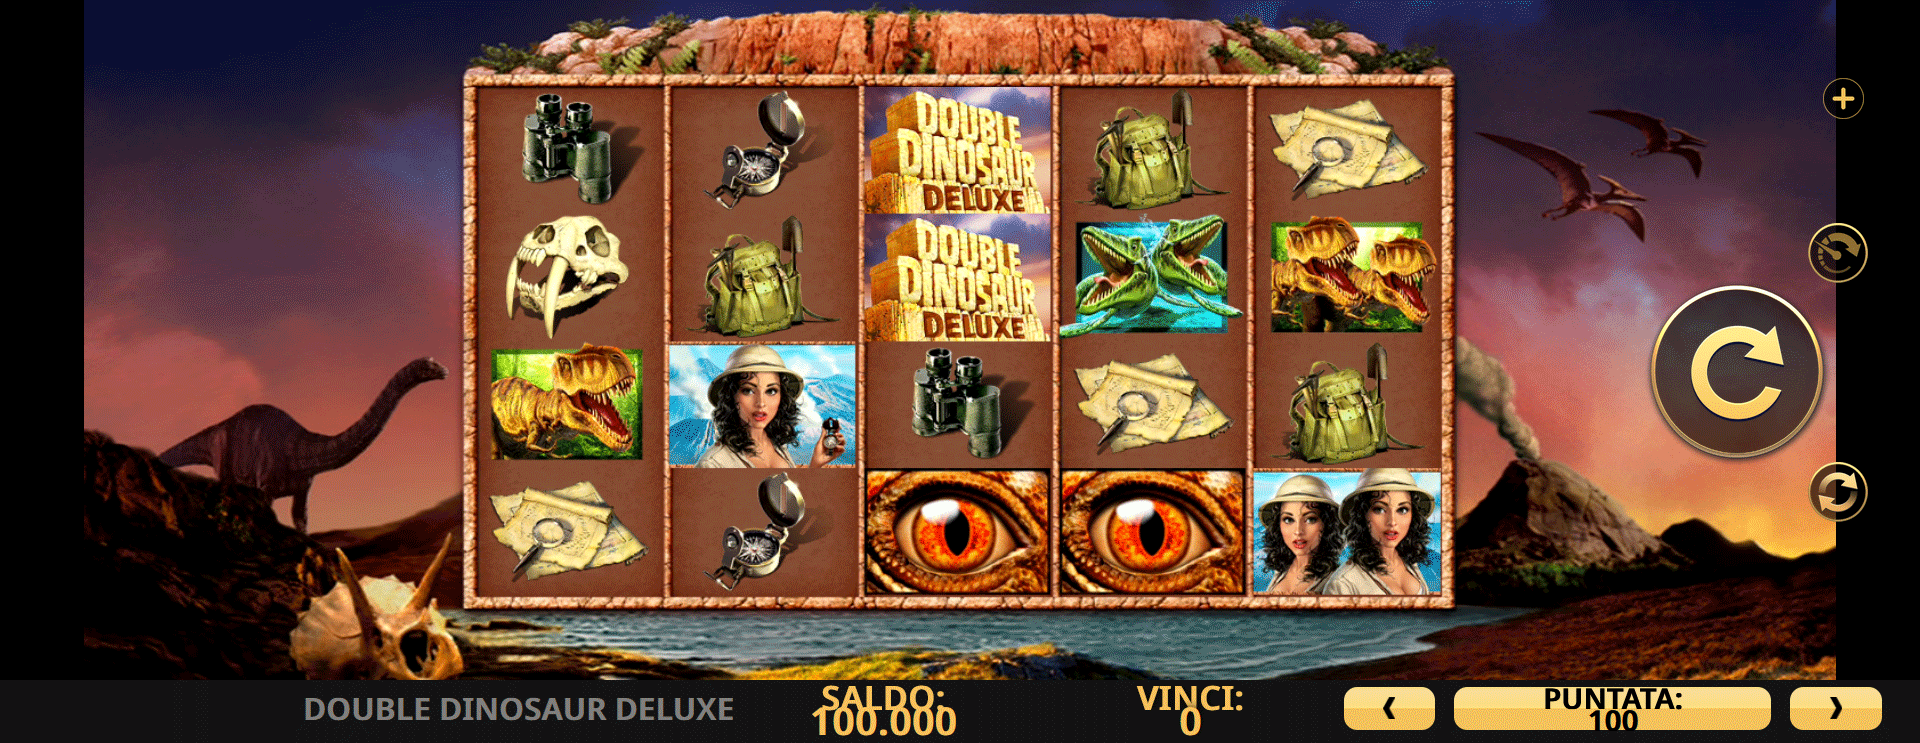 schermata del gioco della slot online double dinosaur deluxe